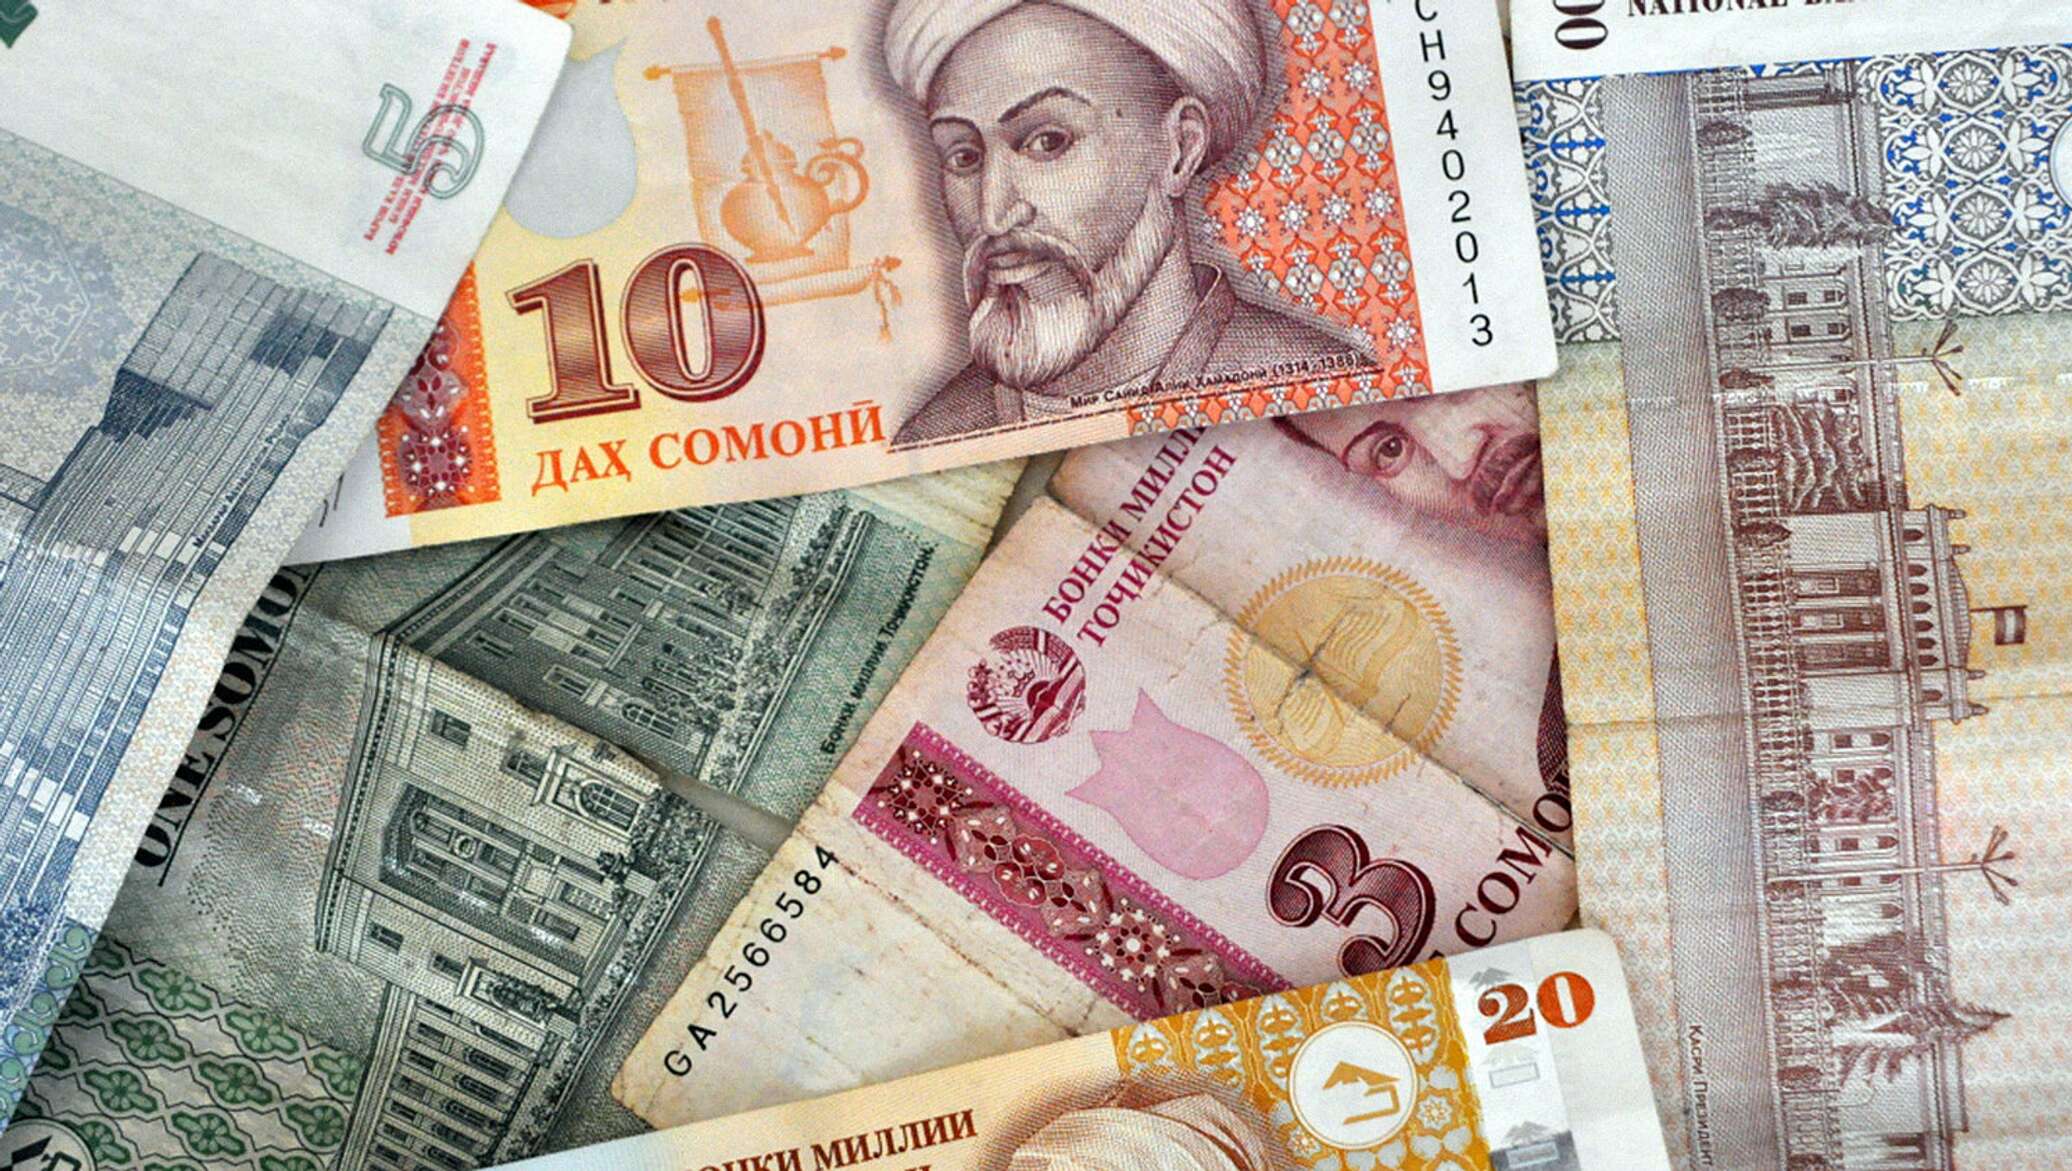 Национальная валюта таджикистана. Деньги Таджикистана. Деньги Сомони. Купюра Сомони.